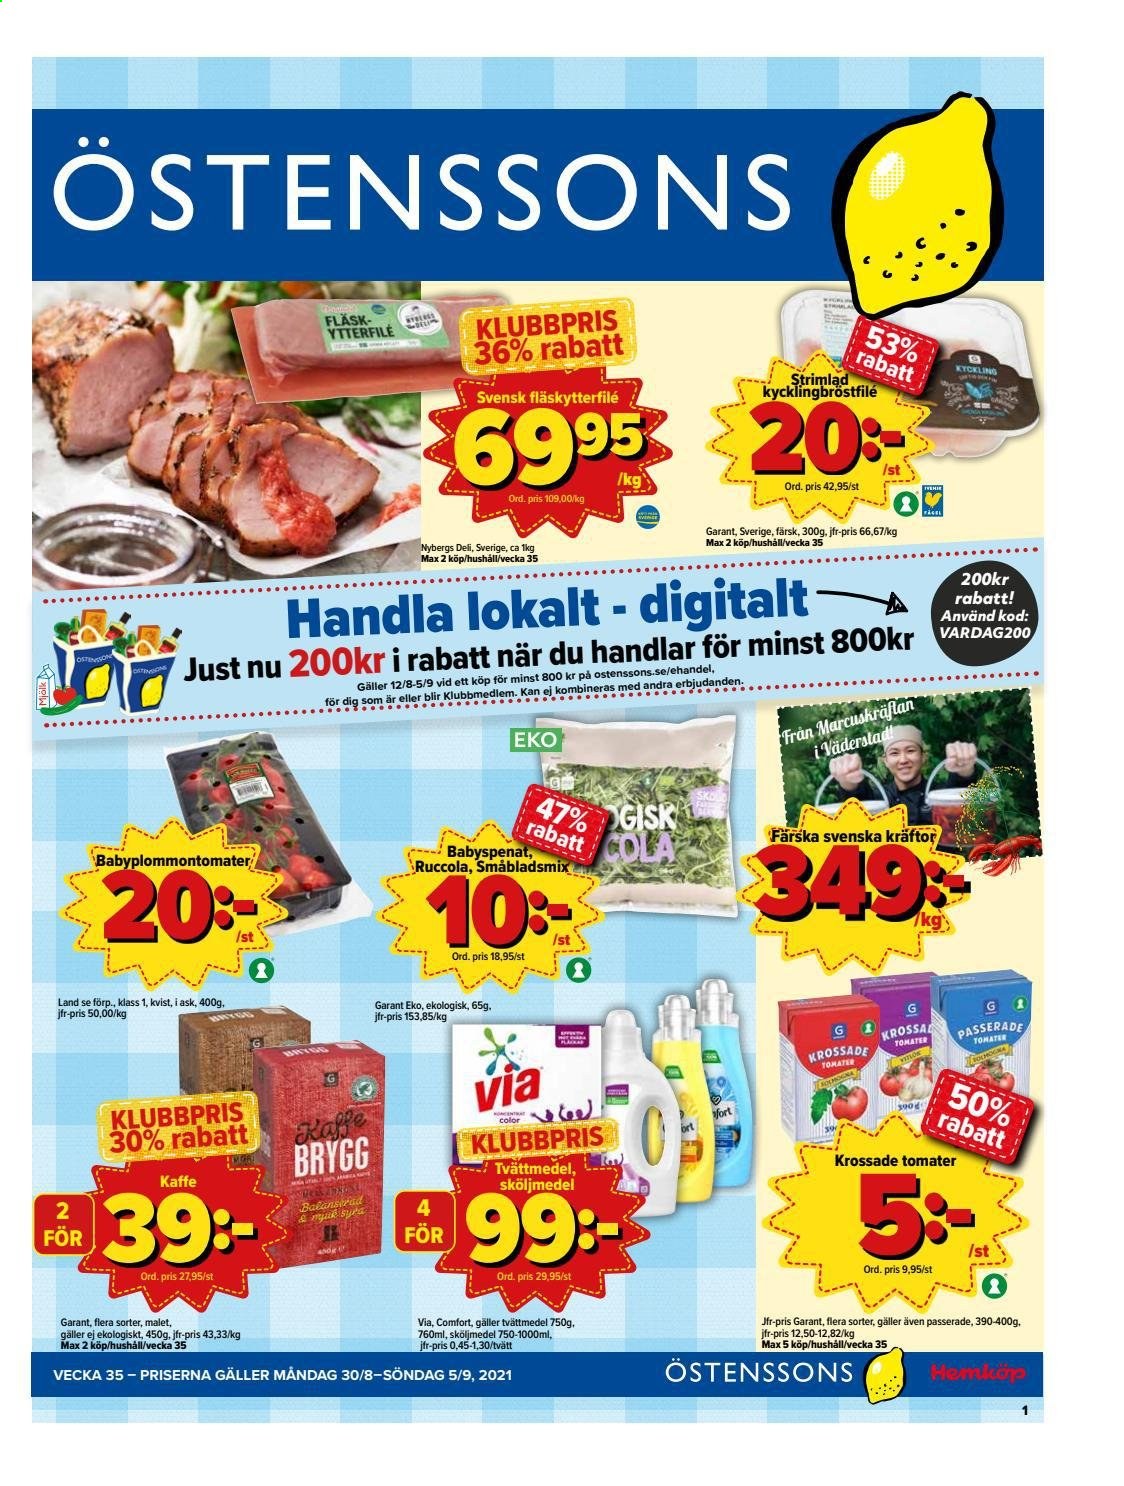 thumbnail - Östenssons reklamblad - 30/8 2021 - 5/9 2021 - varor från reklamblad - kycklingbröstfilé, fläskytterfilé, tomater, kräftor, krossade tomater, kaffe, tvättmedel. Sida 1.